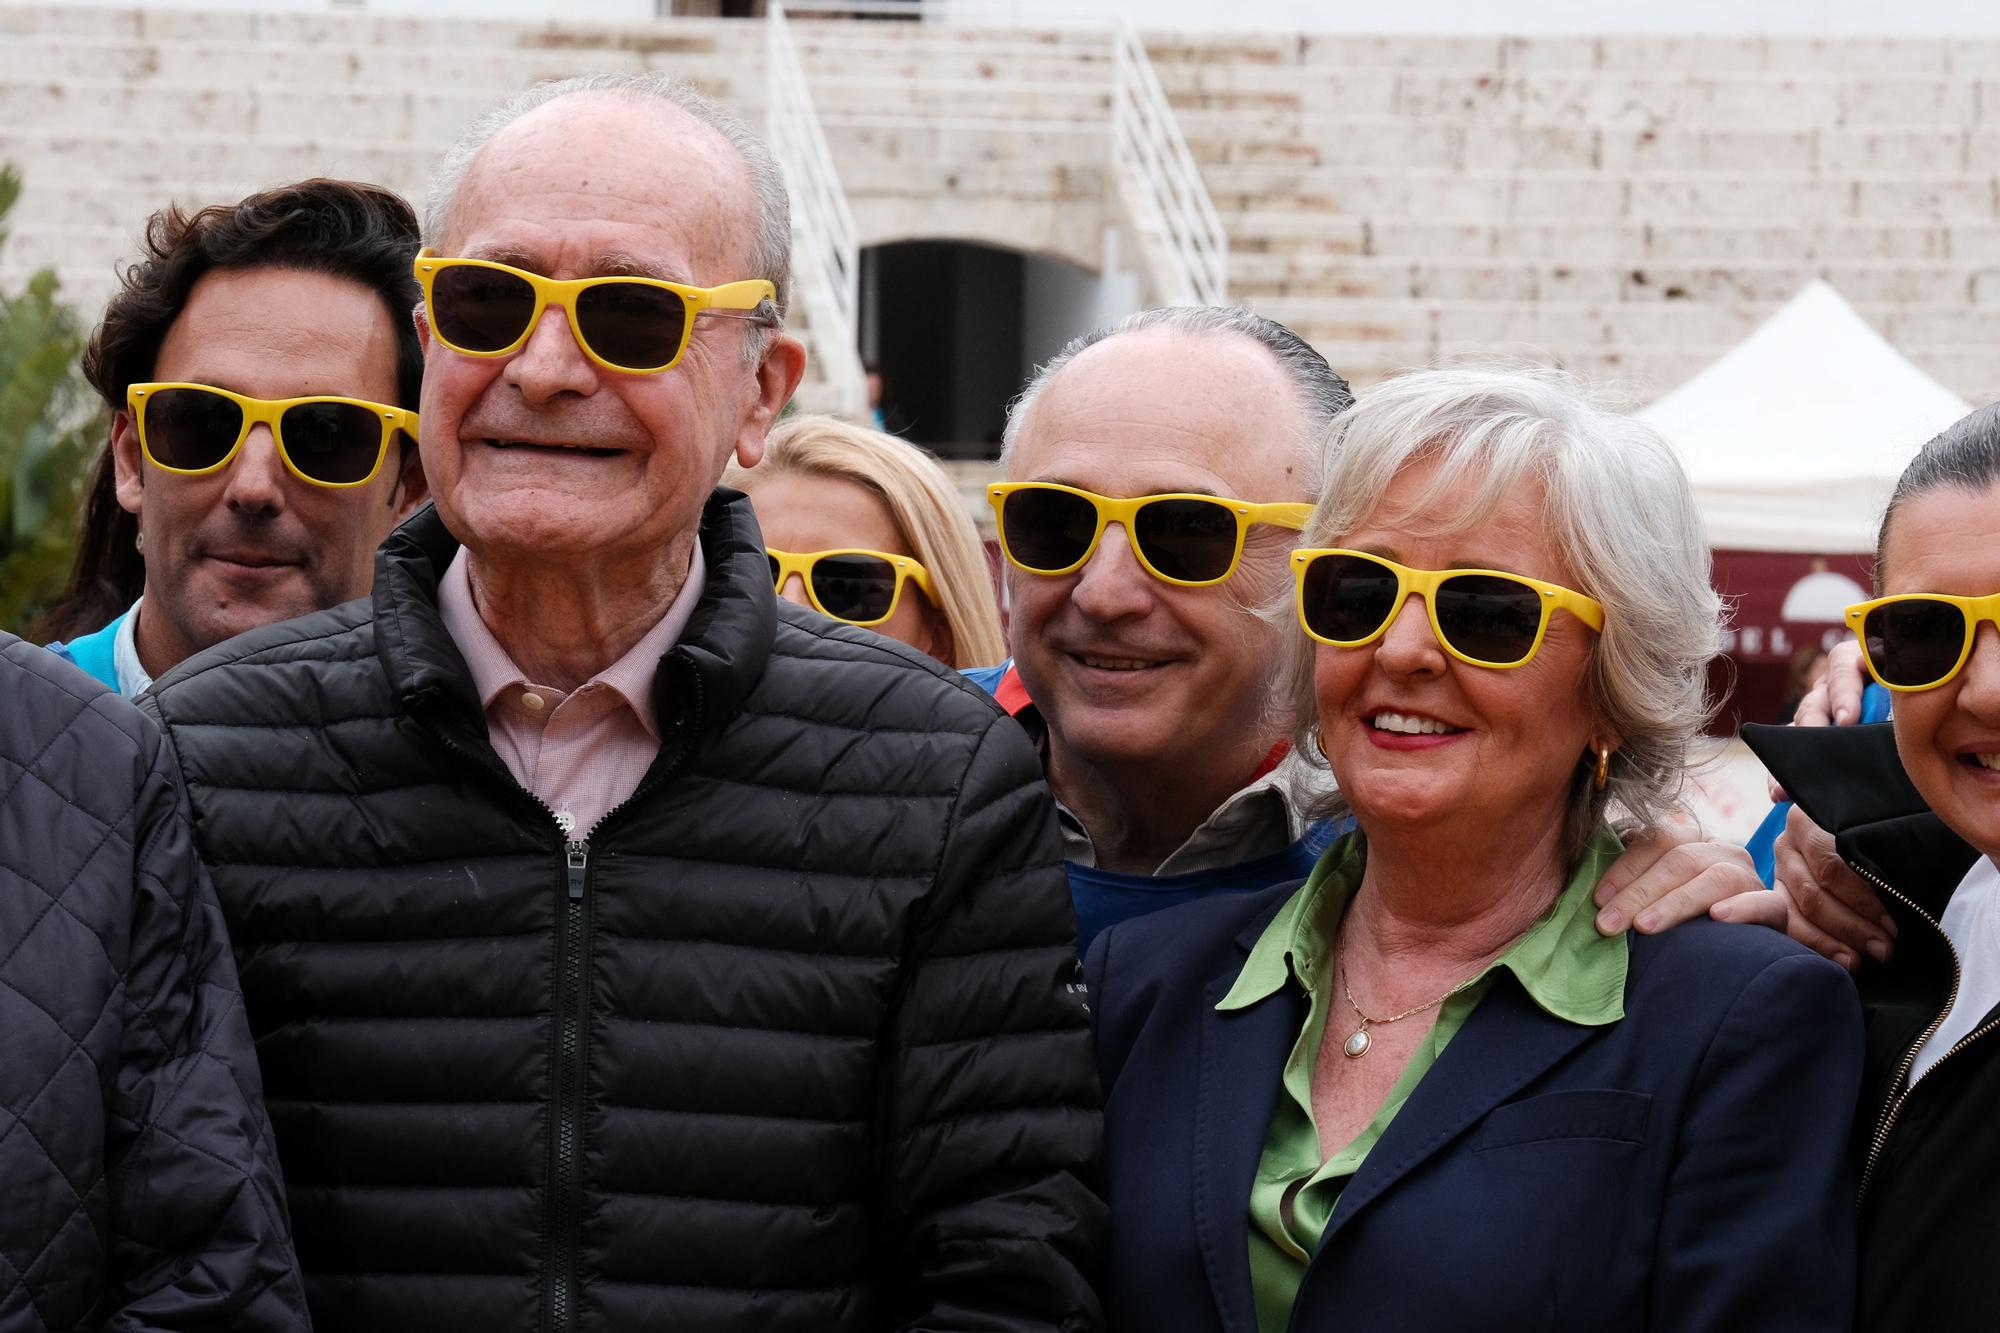 El Festival Solidario Soles de Málaga, organizado por la Fundación el Pimpi, se celebra este sábado en la Plaza de Toros de la Malagueta a beneficio de colectivos sociales y ONG, este año la mayoría de ellas relacionadas con los mayores.